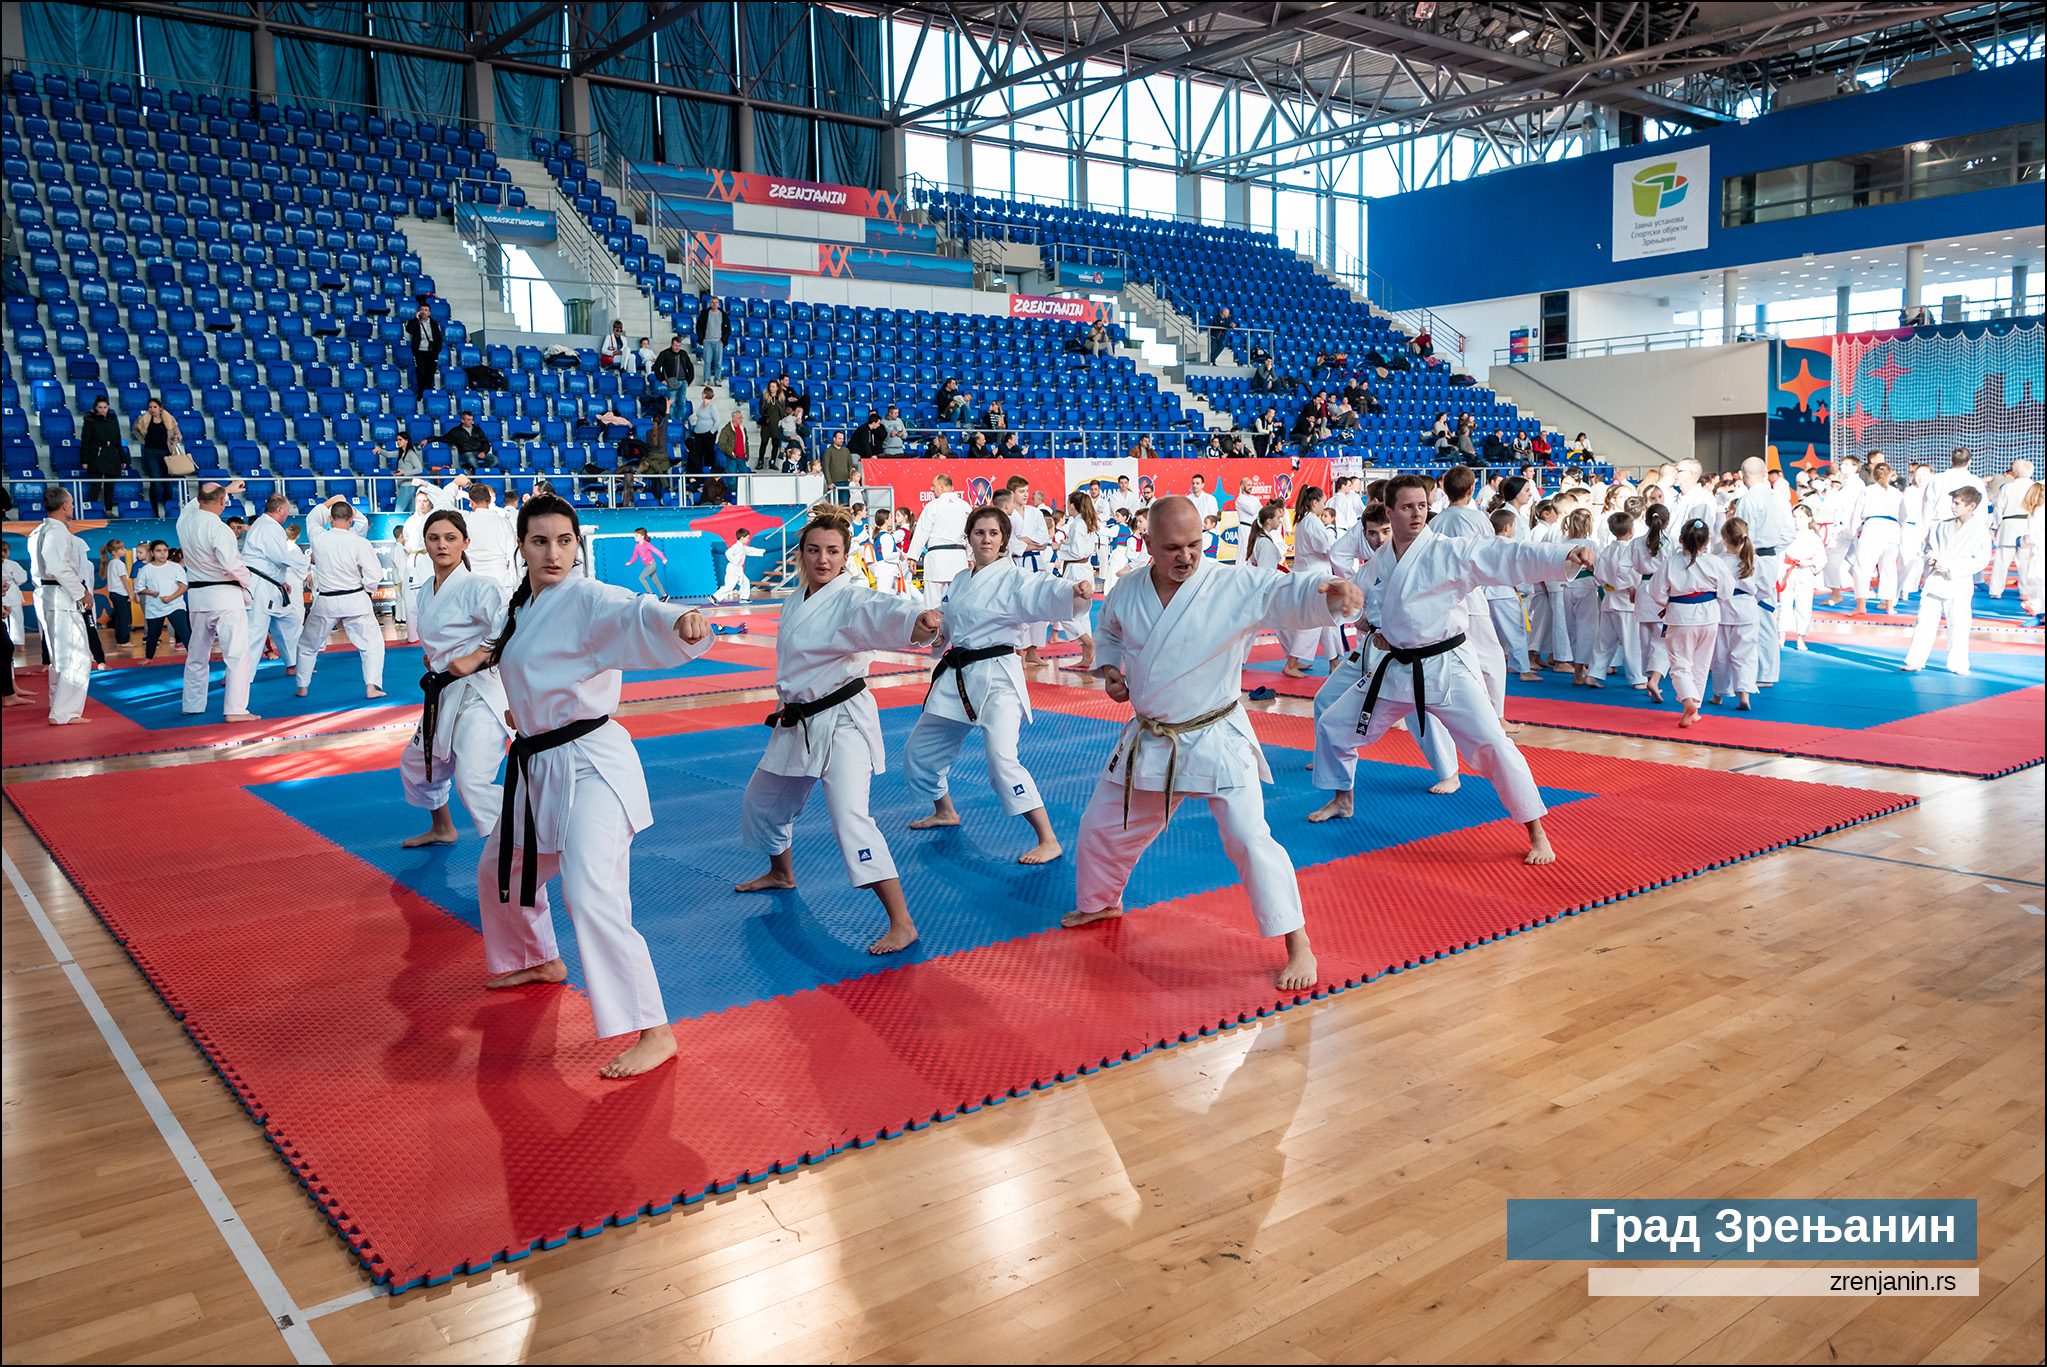 Održan prvi gradski humanitarni karate seminar